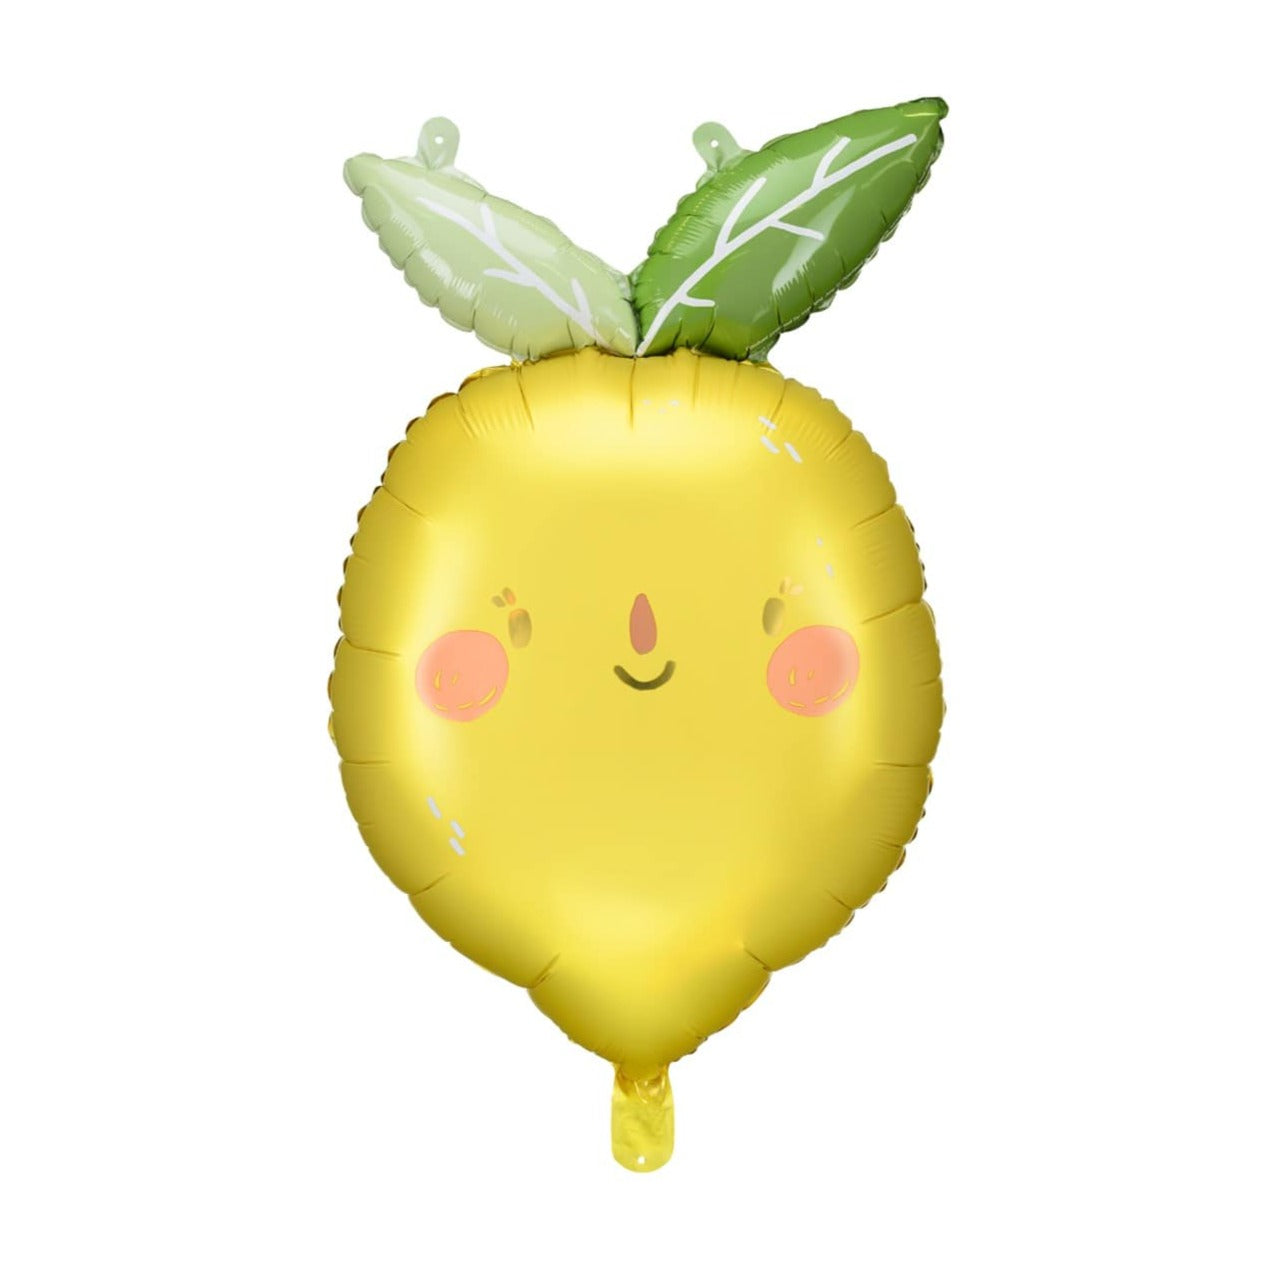 Cute Lemon Balloon